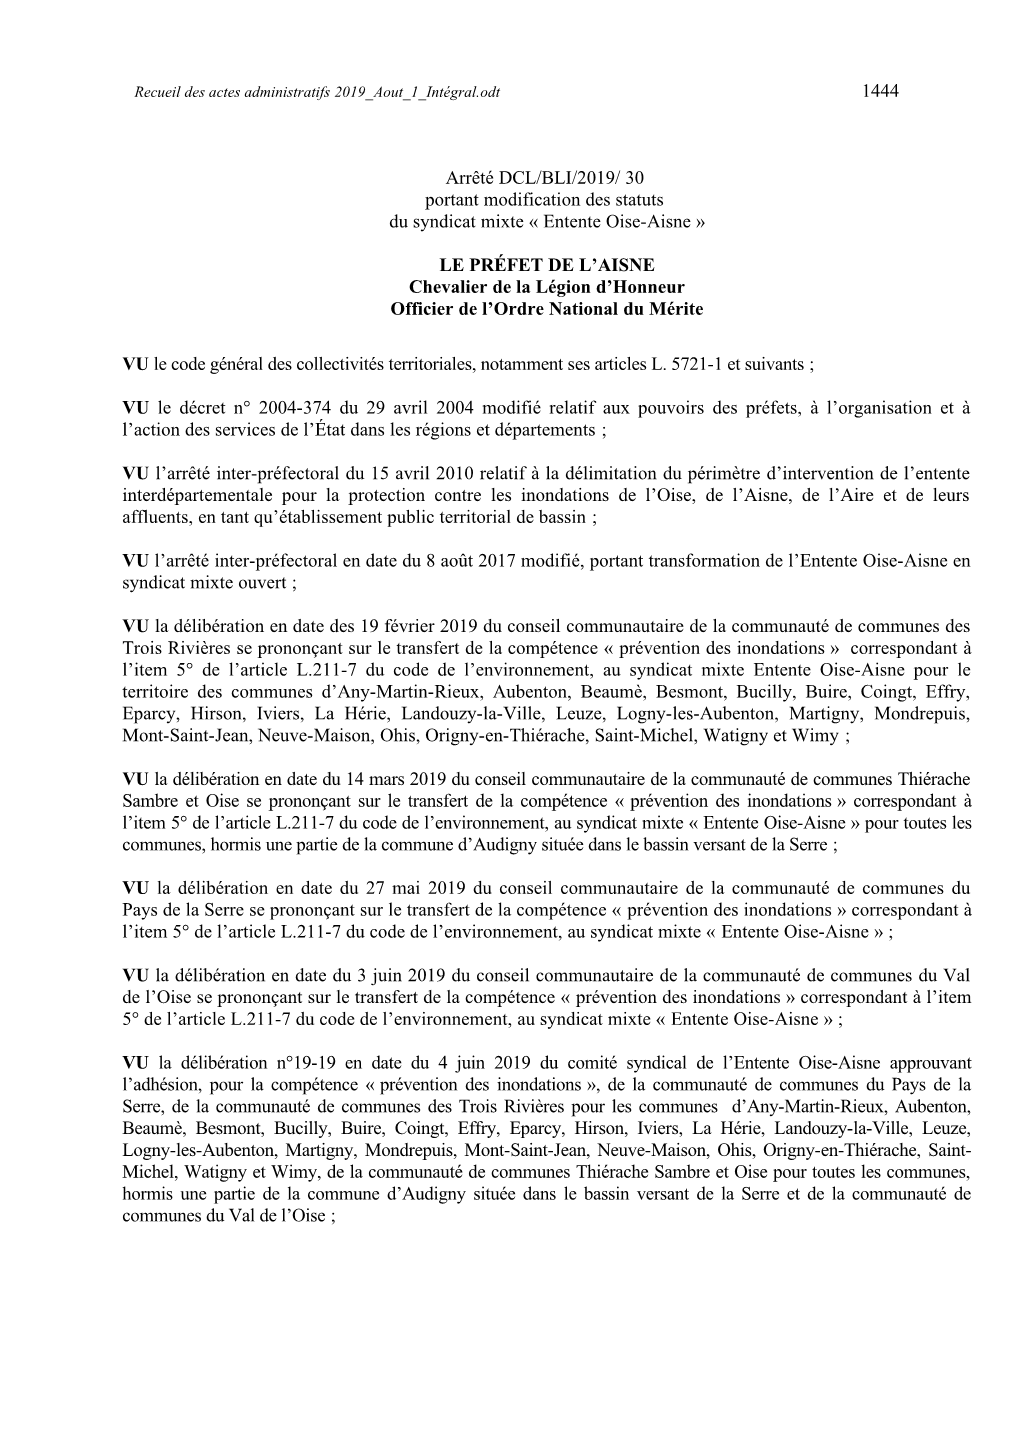 30 Portant Modification Des Statuts Du Syndicat Mixte « Entente Oise-Aisne »